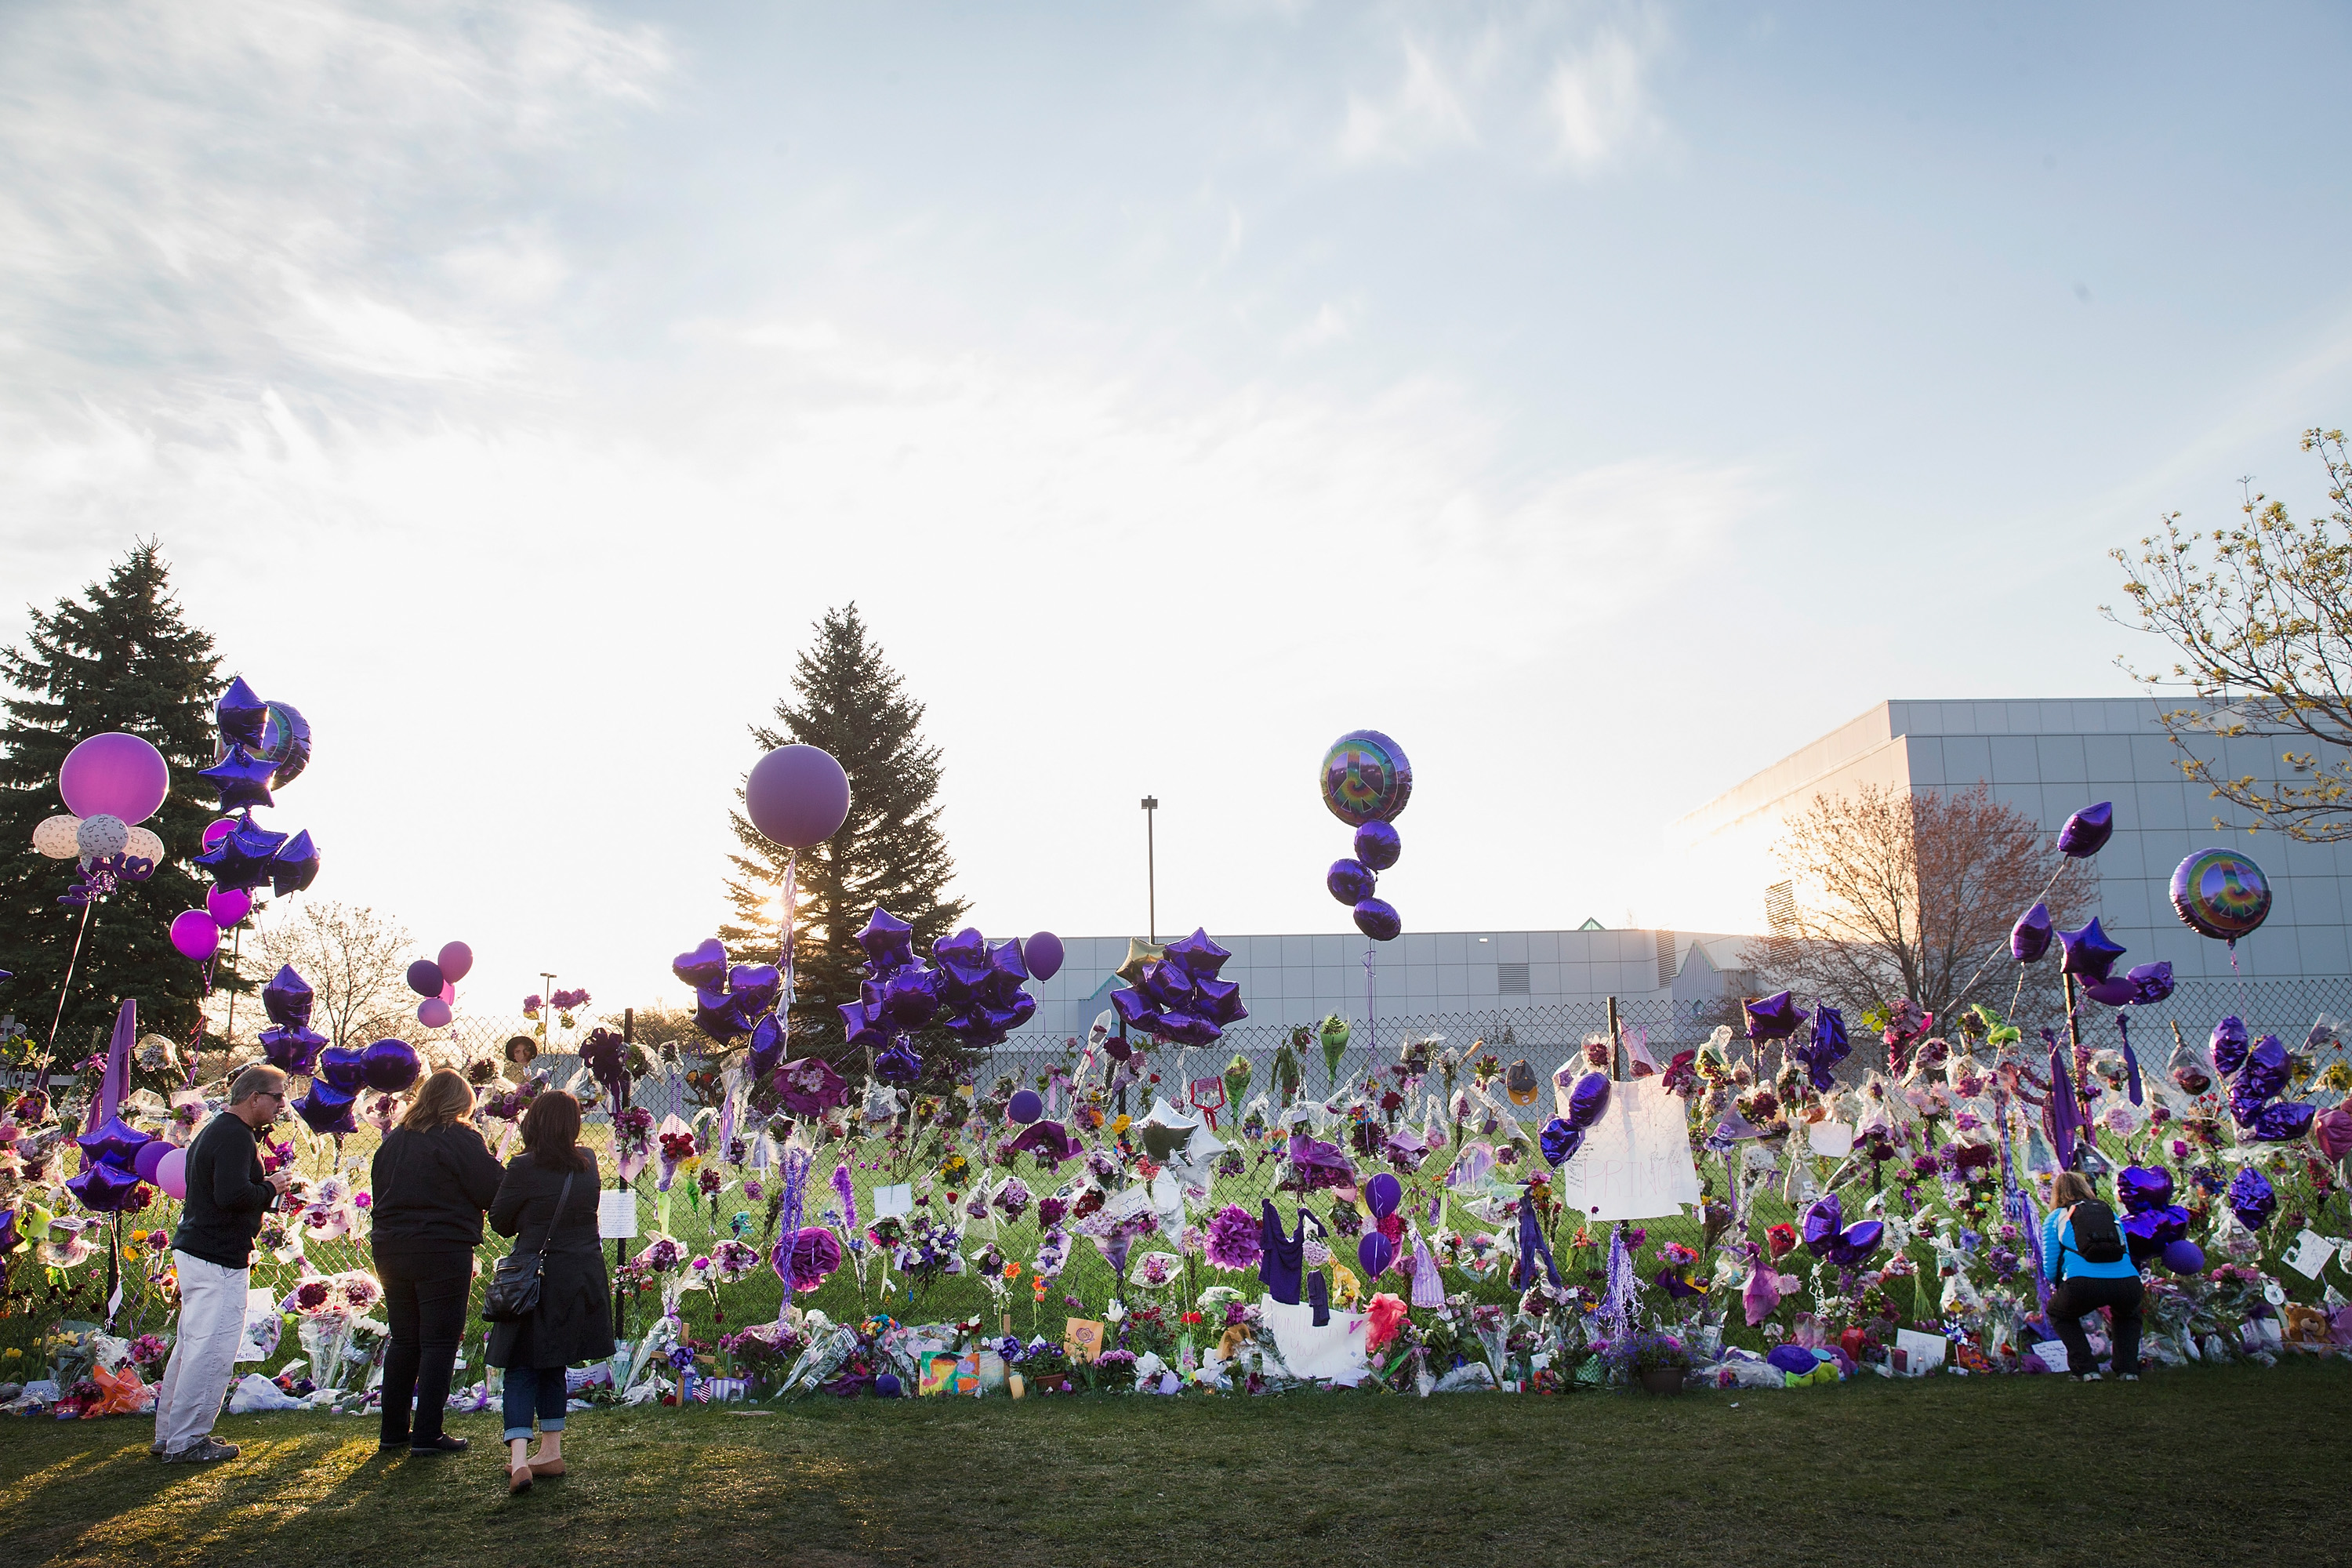 Les fans de Prince visitent son mémorial à l'extérieur de Paisley Park, à Chanhassen, Minnesota, le 23 avril 2016 | Source : Getty Images